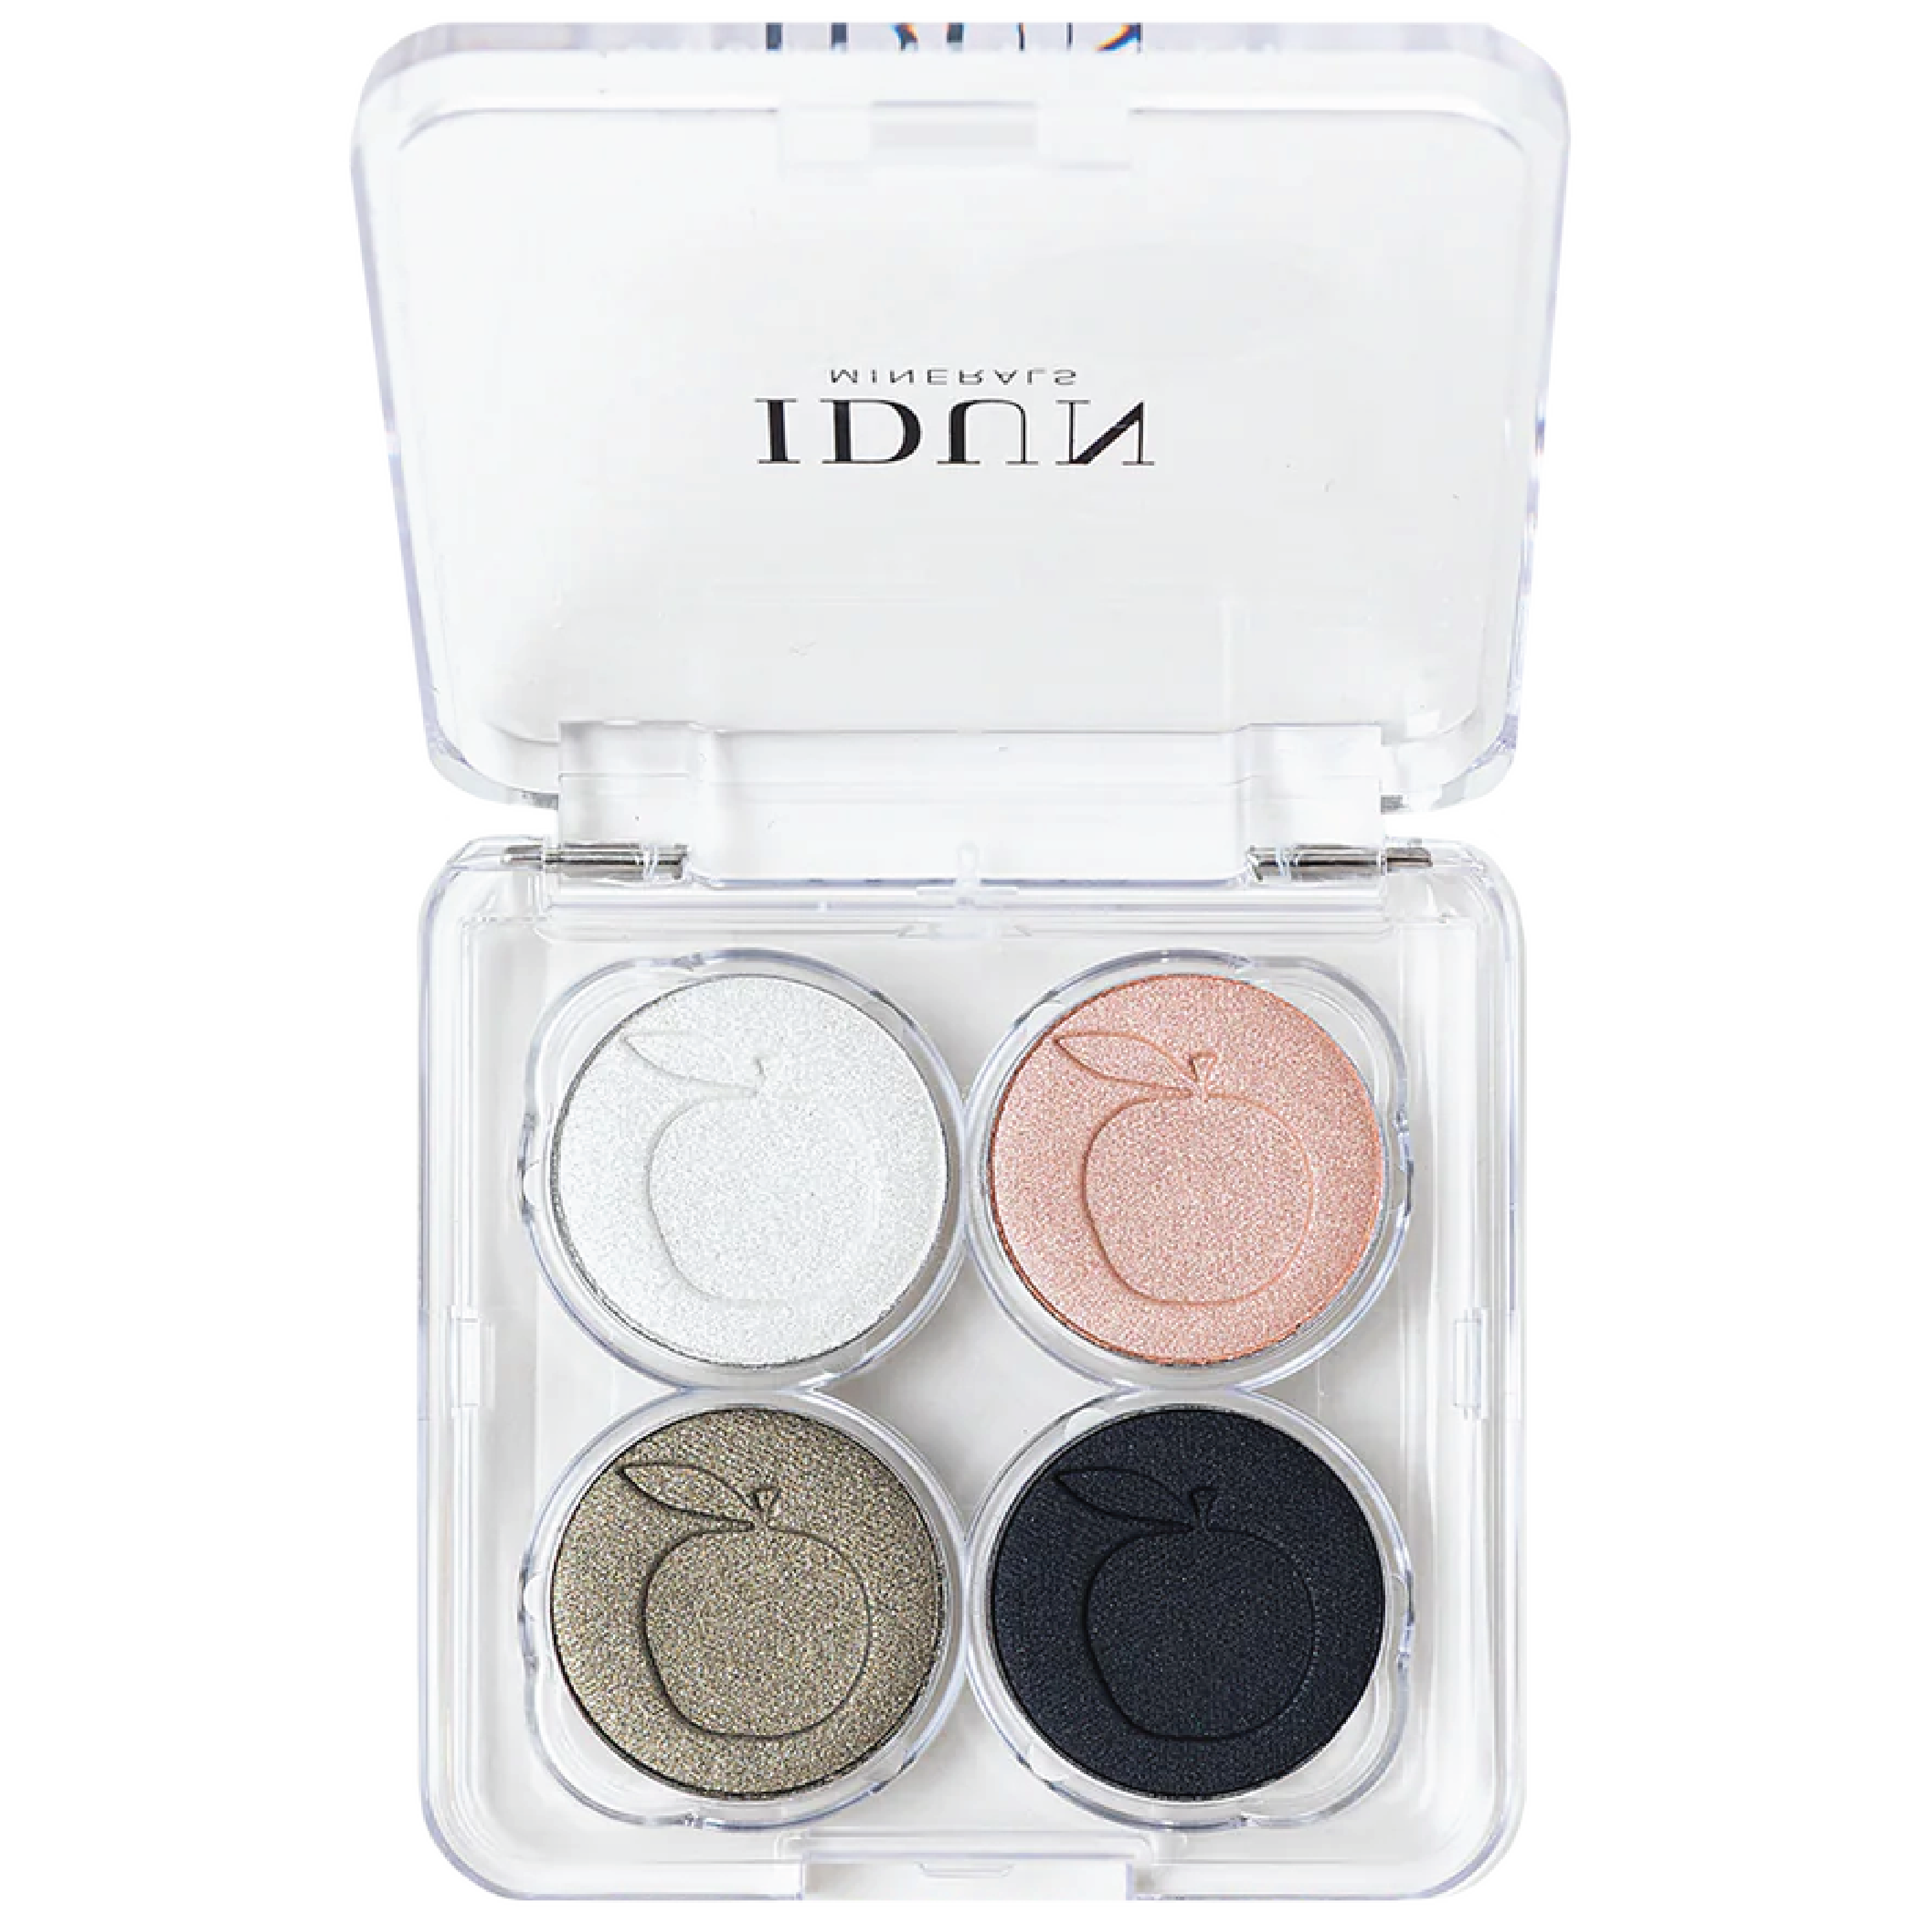 IDUN Minerals Eyeshadow Palette, Vitsippa, 4 g